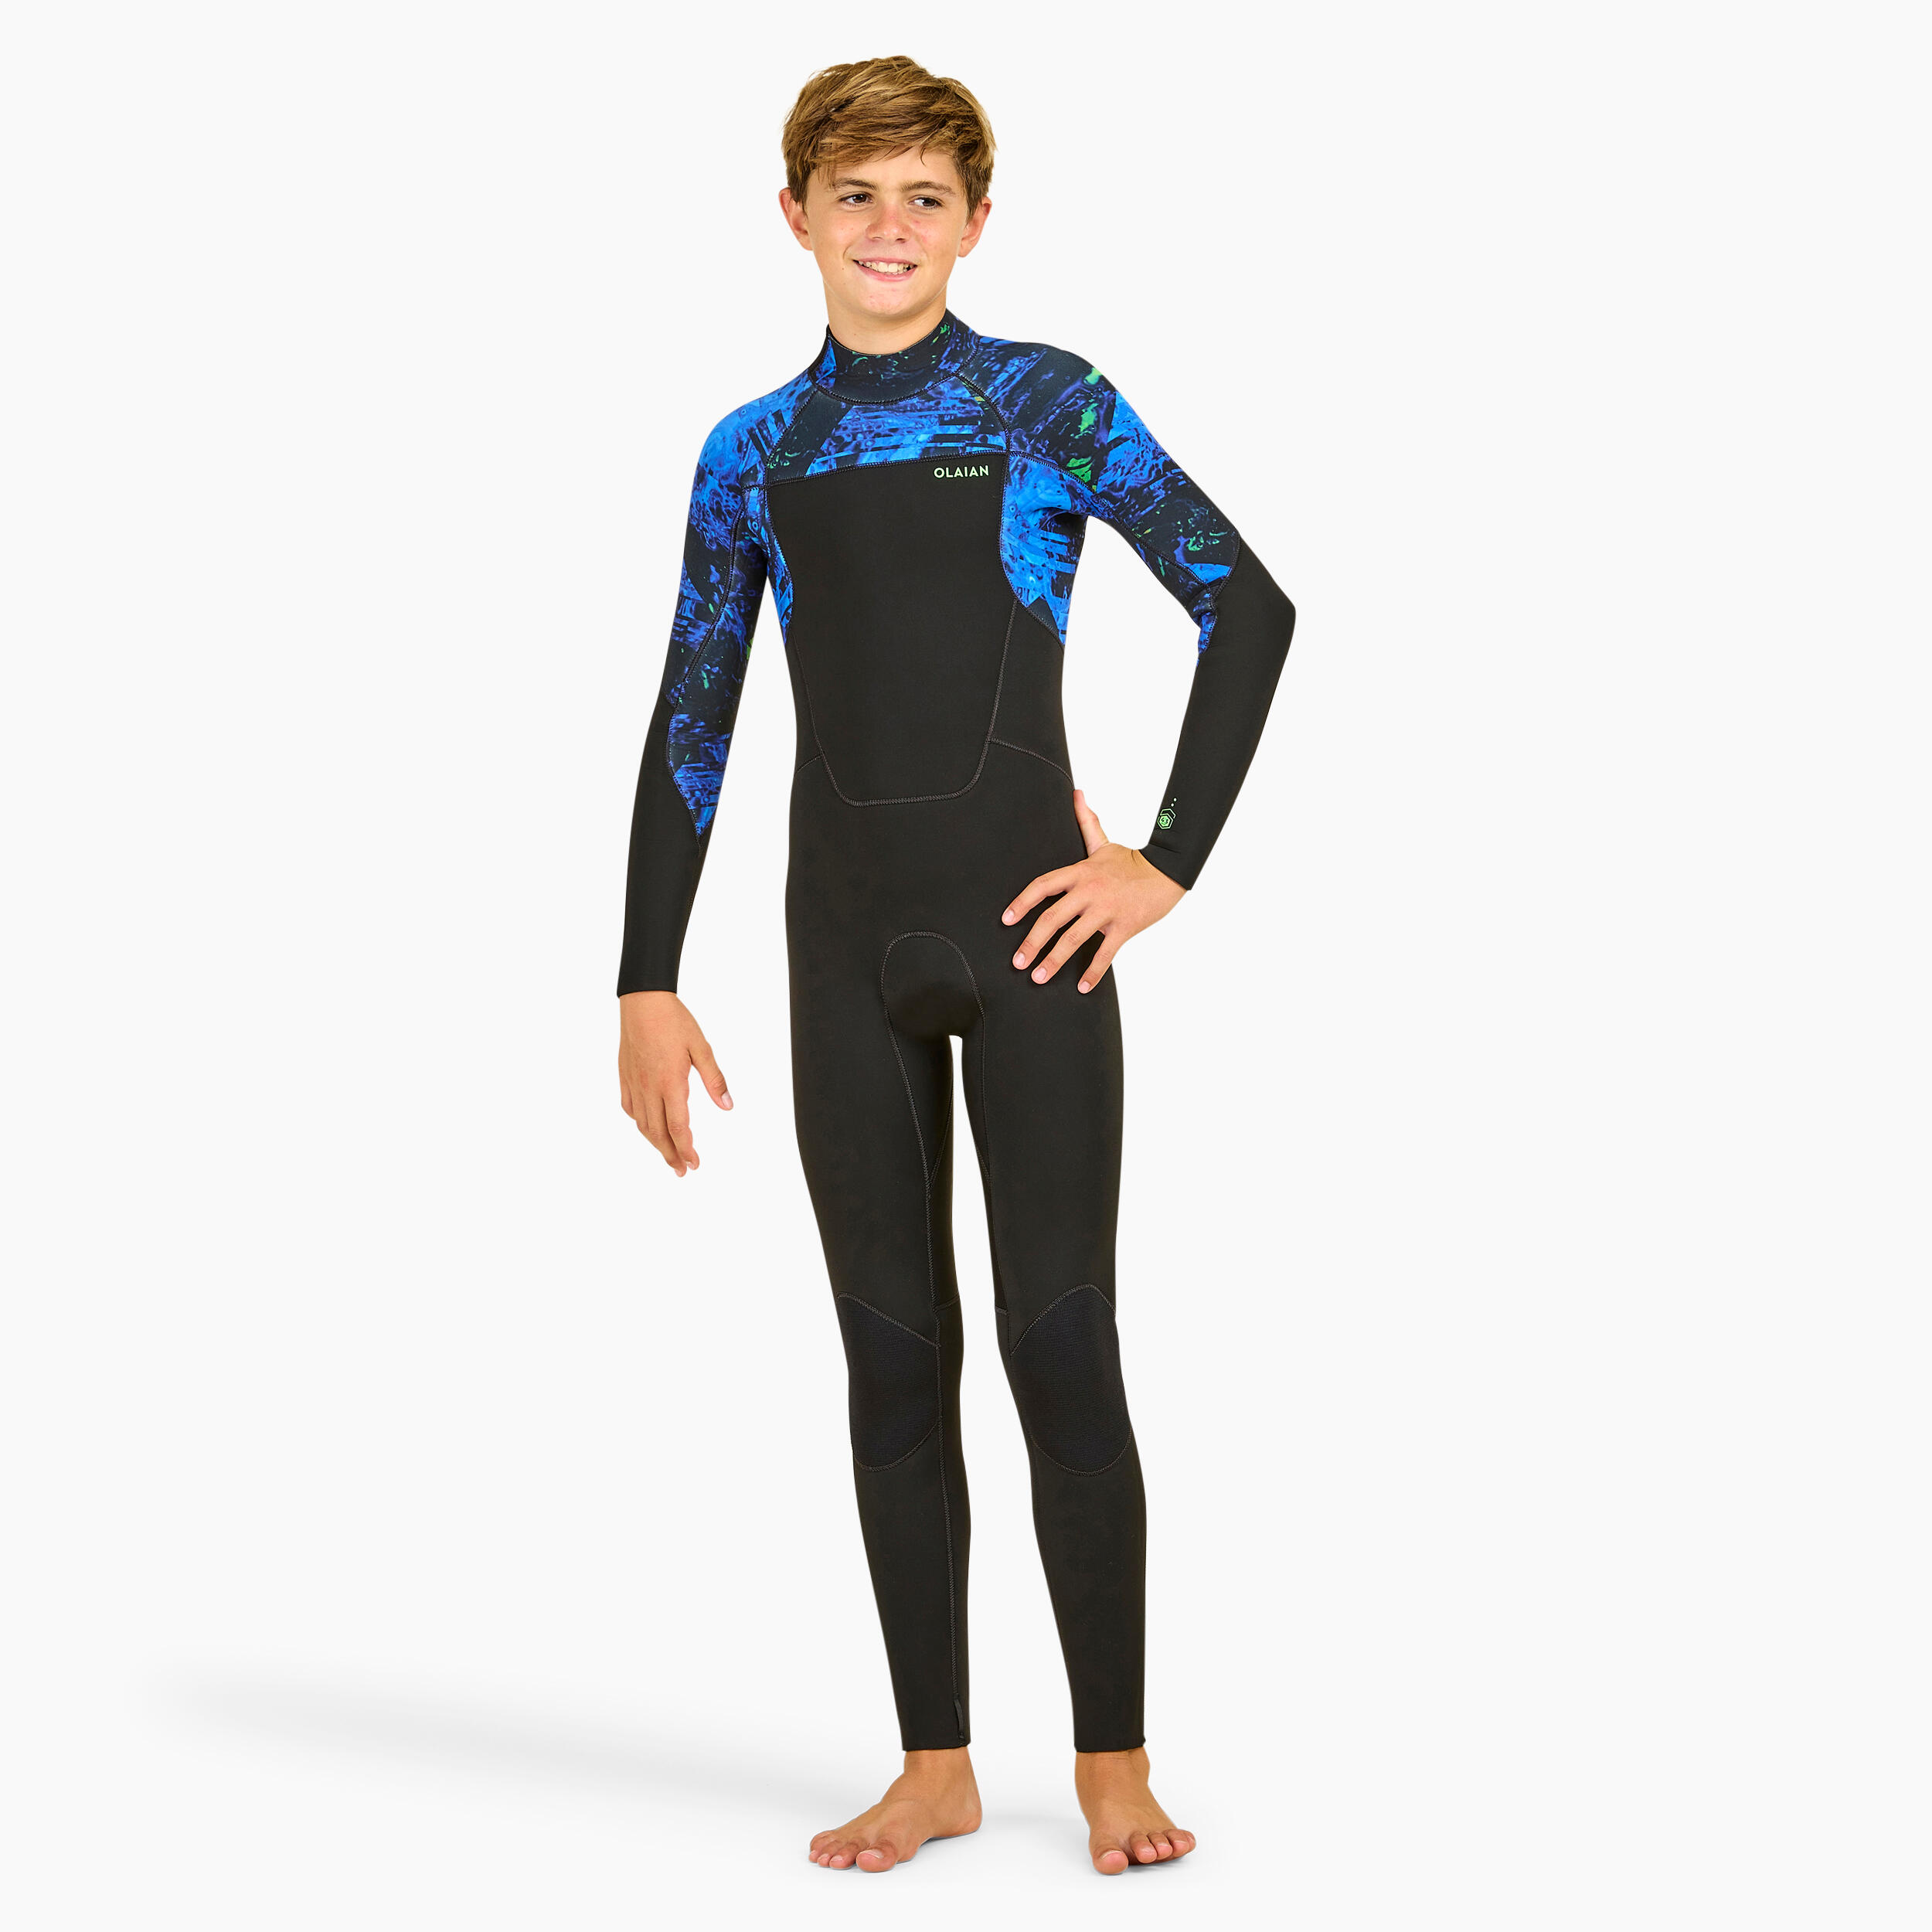 BOY'S SURFING WETSUIT 500 4/3 MM VORTEX BLACK 1/11